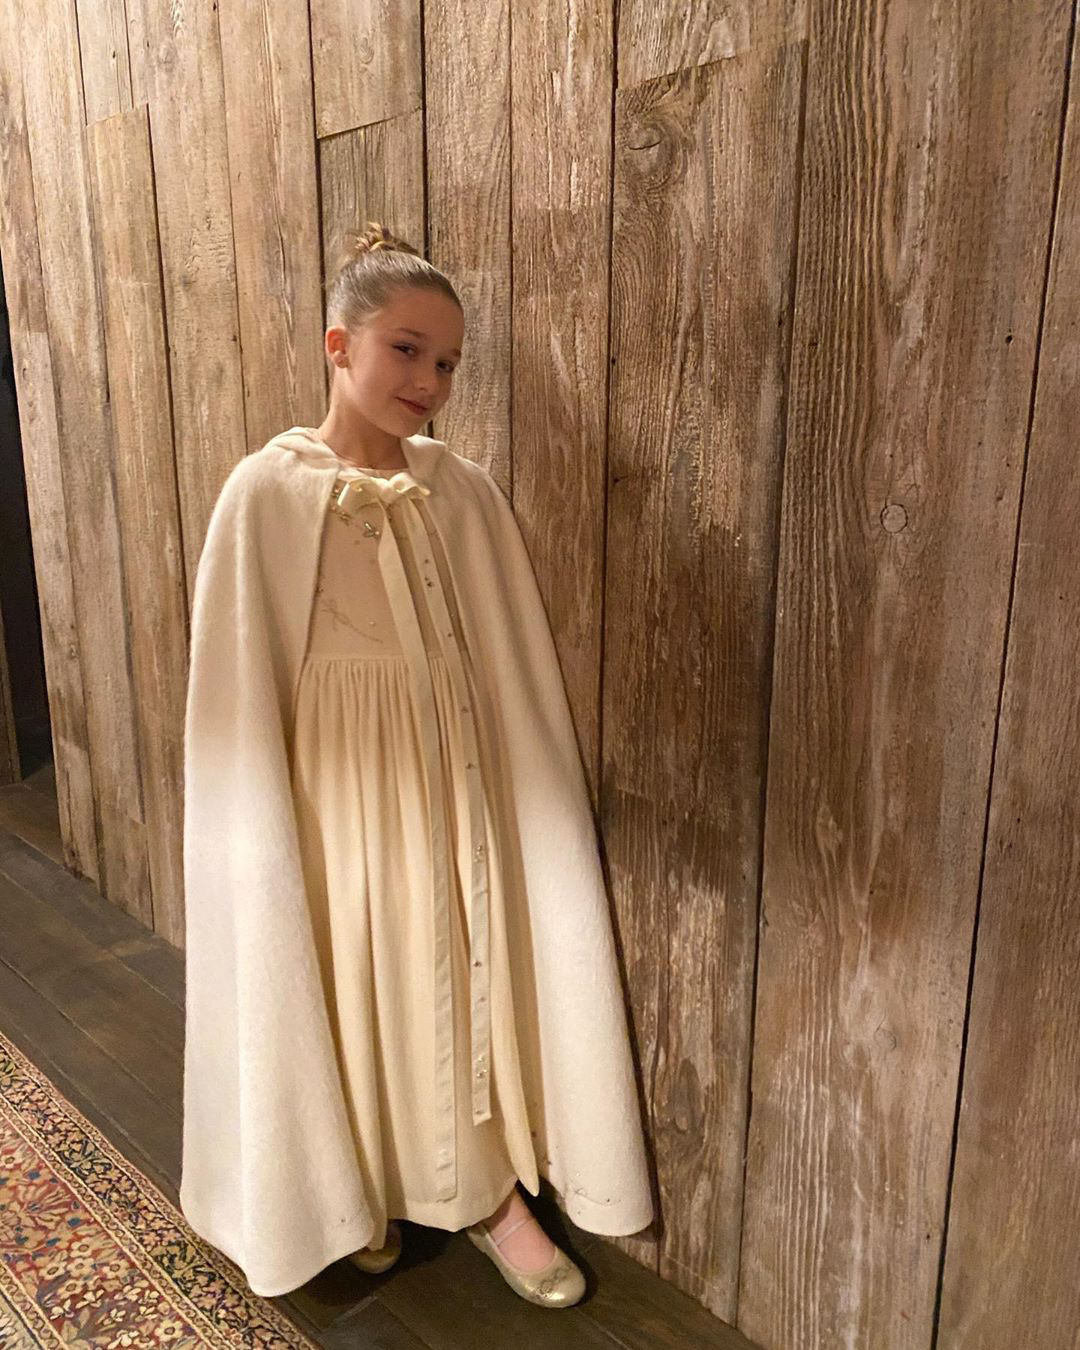 Đẳng cấp công chúa nhỏ nhà Beckham: Váy áo thiết kế riêng đã đành, đến chất liệu cũng phải trau chuốt tỉ mẩn - Ảnh 2.